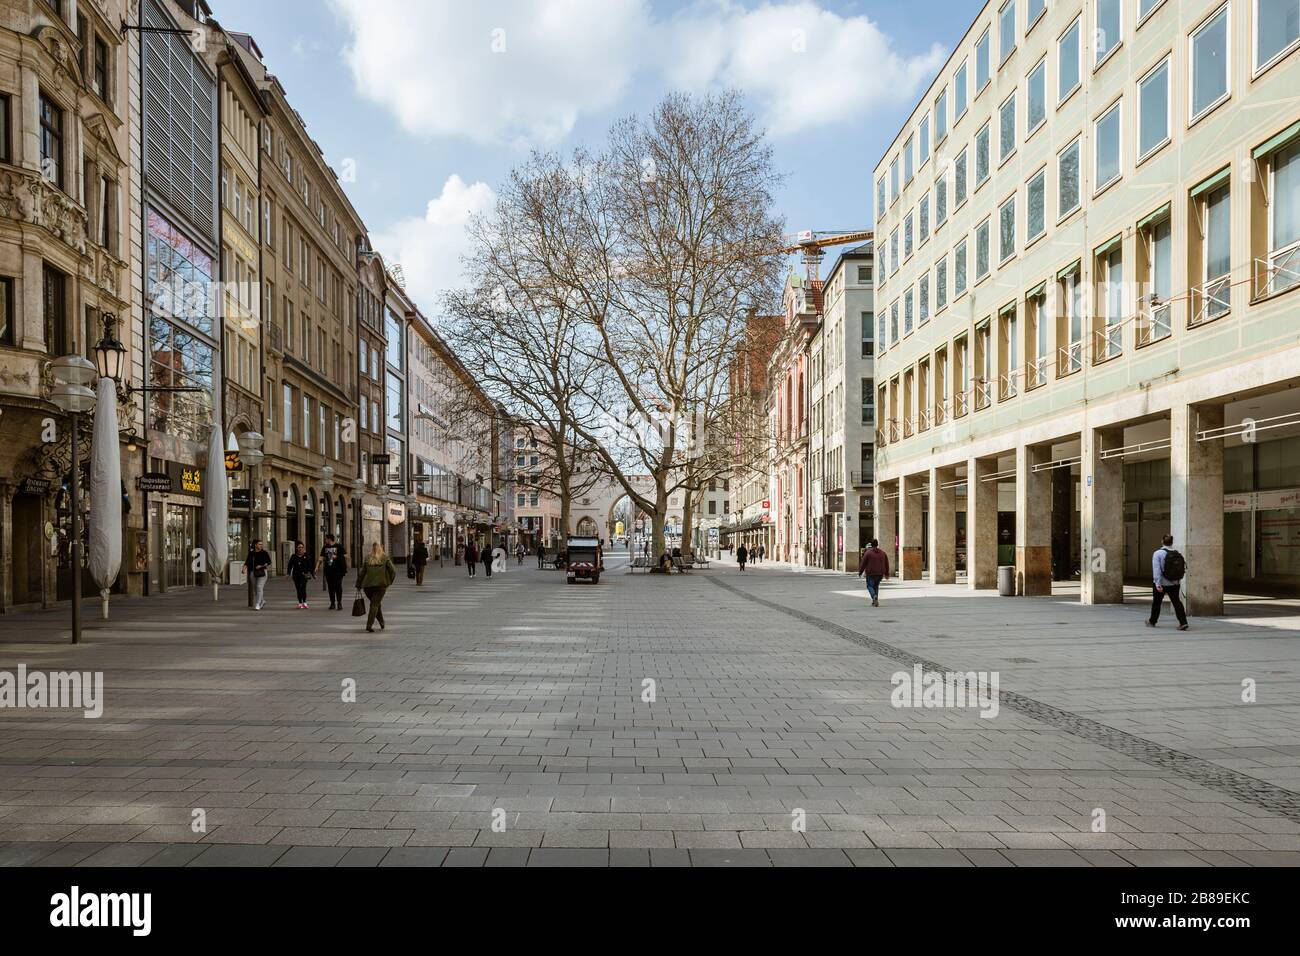 Baviera-Mucnich-Germania, 20. März 2020: Poche persone camminano su Kaufingerstrasse a Monaco, che è di solito affollata, ma rimane vuota a causa del nuovo coro Foto Stock